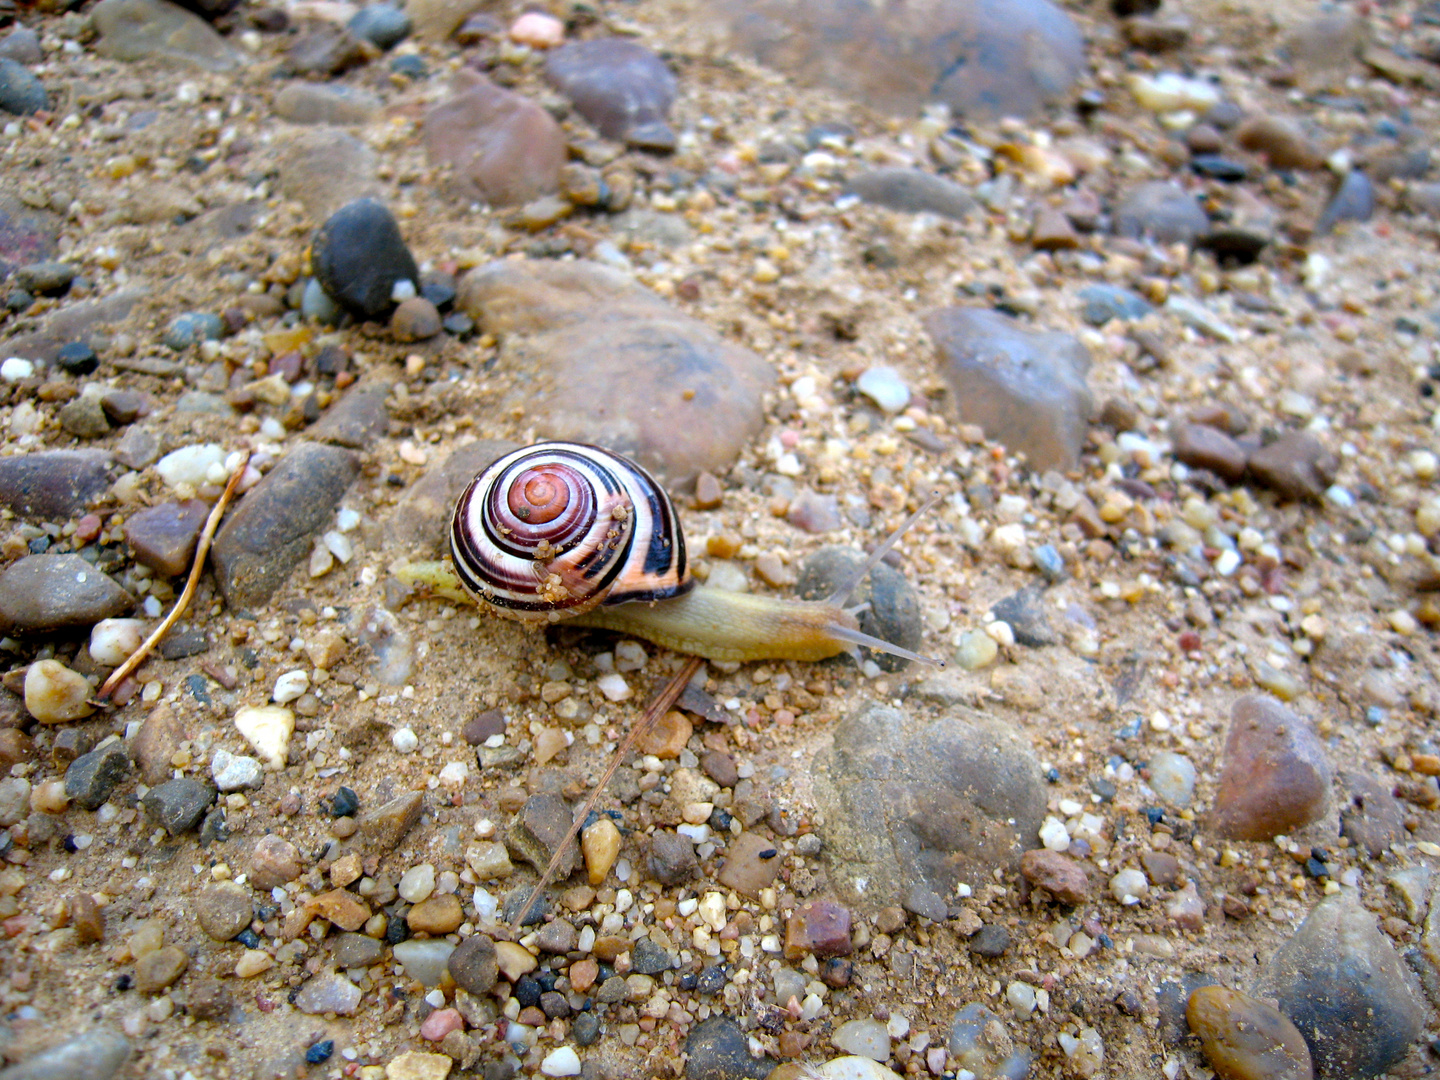 A snail in Spain